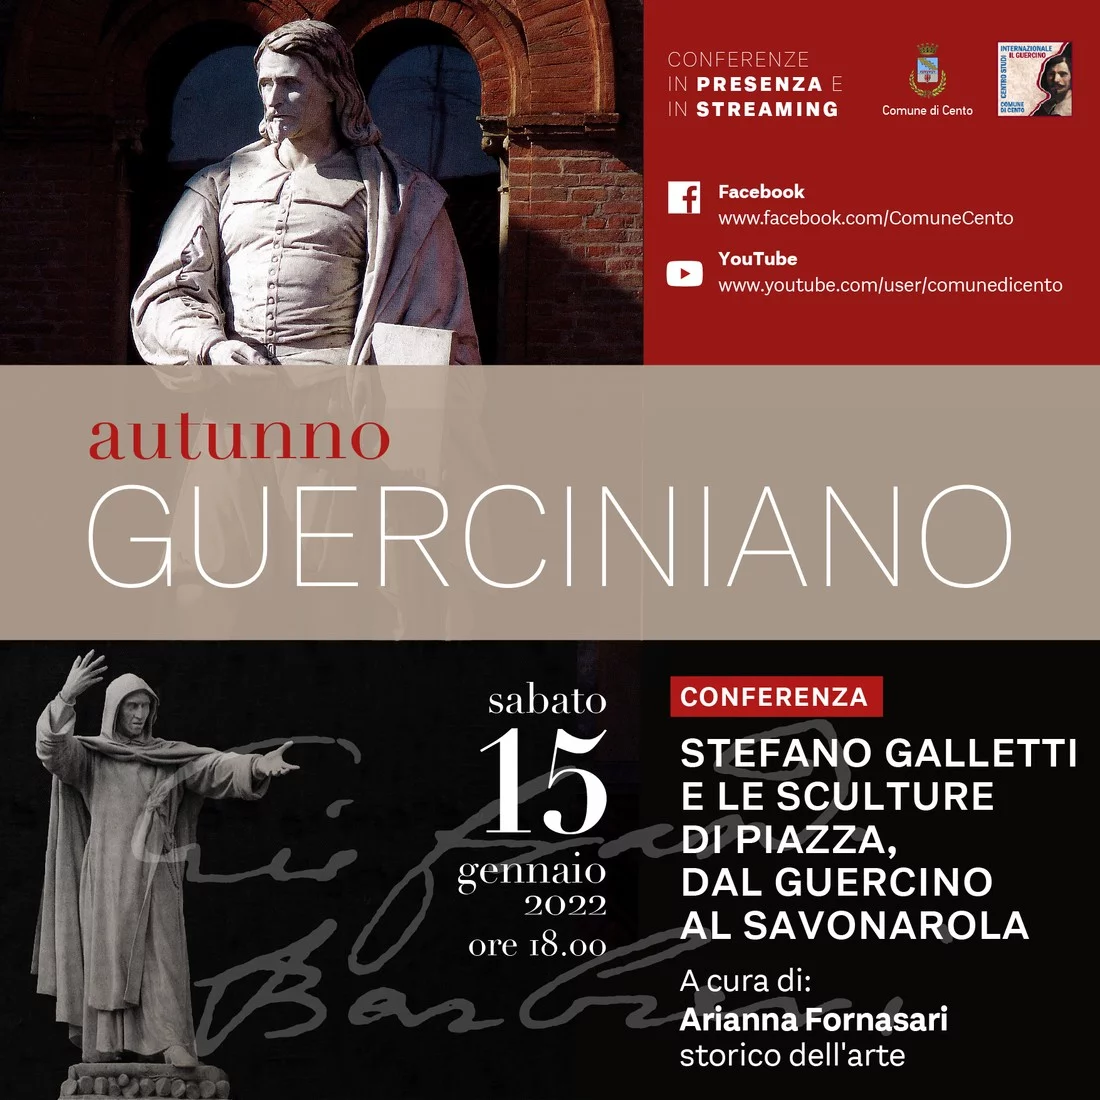 Stefano Galletti e le sculture di piazza, dal Guercino al Savonarola